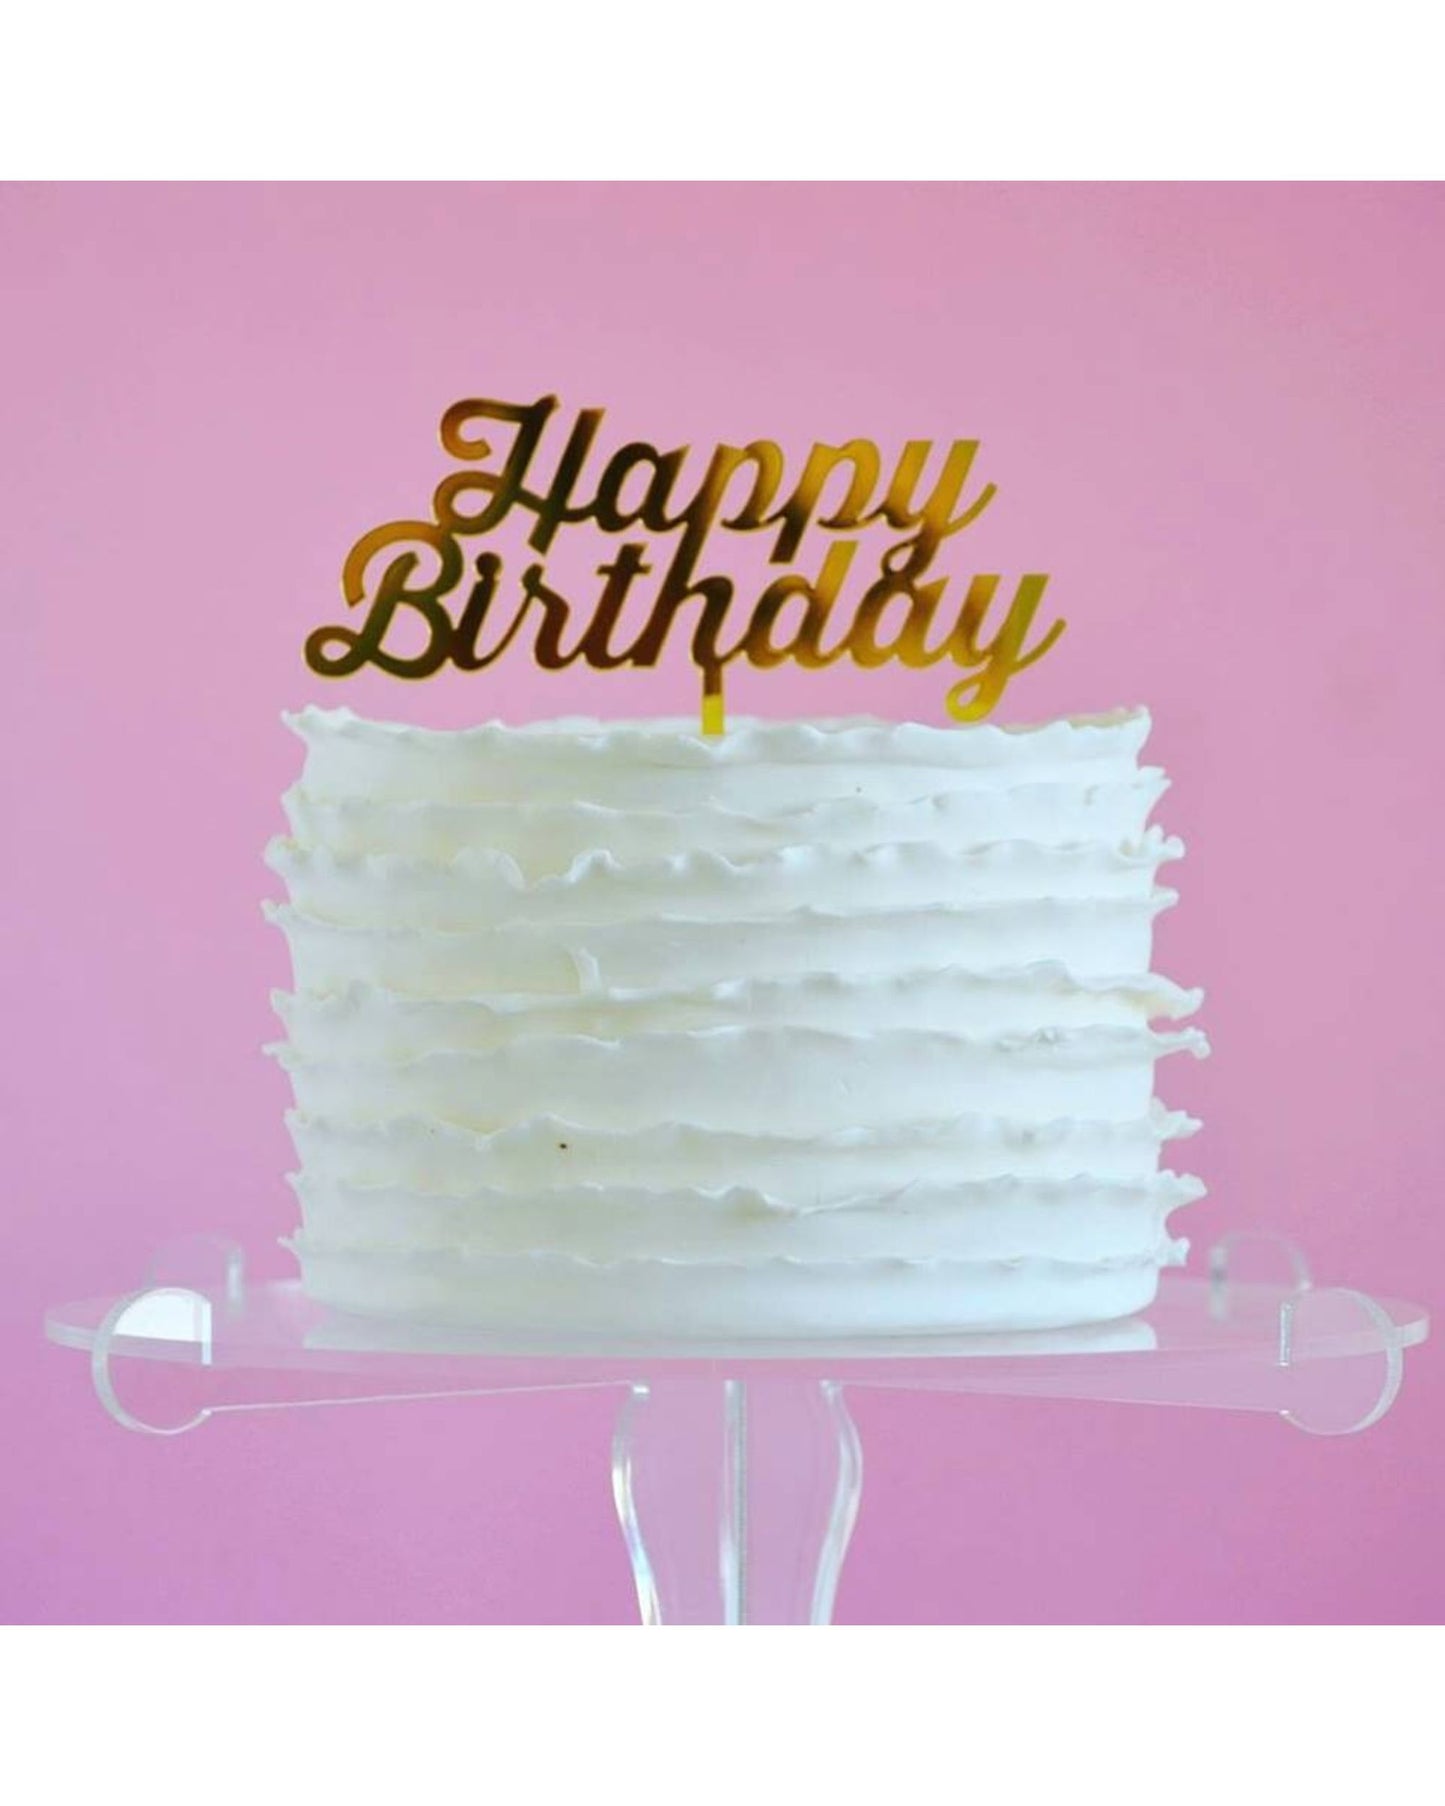 Topo de bolo acrílico happy birthday tradicional